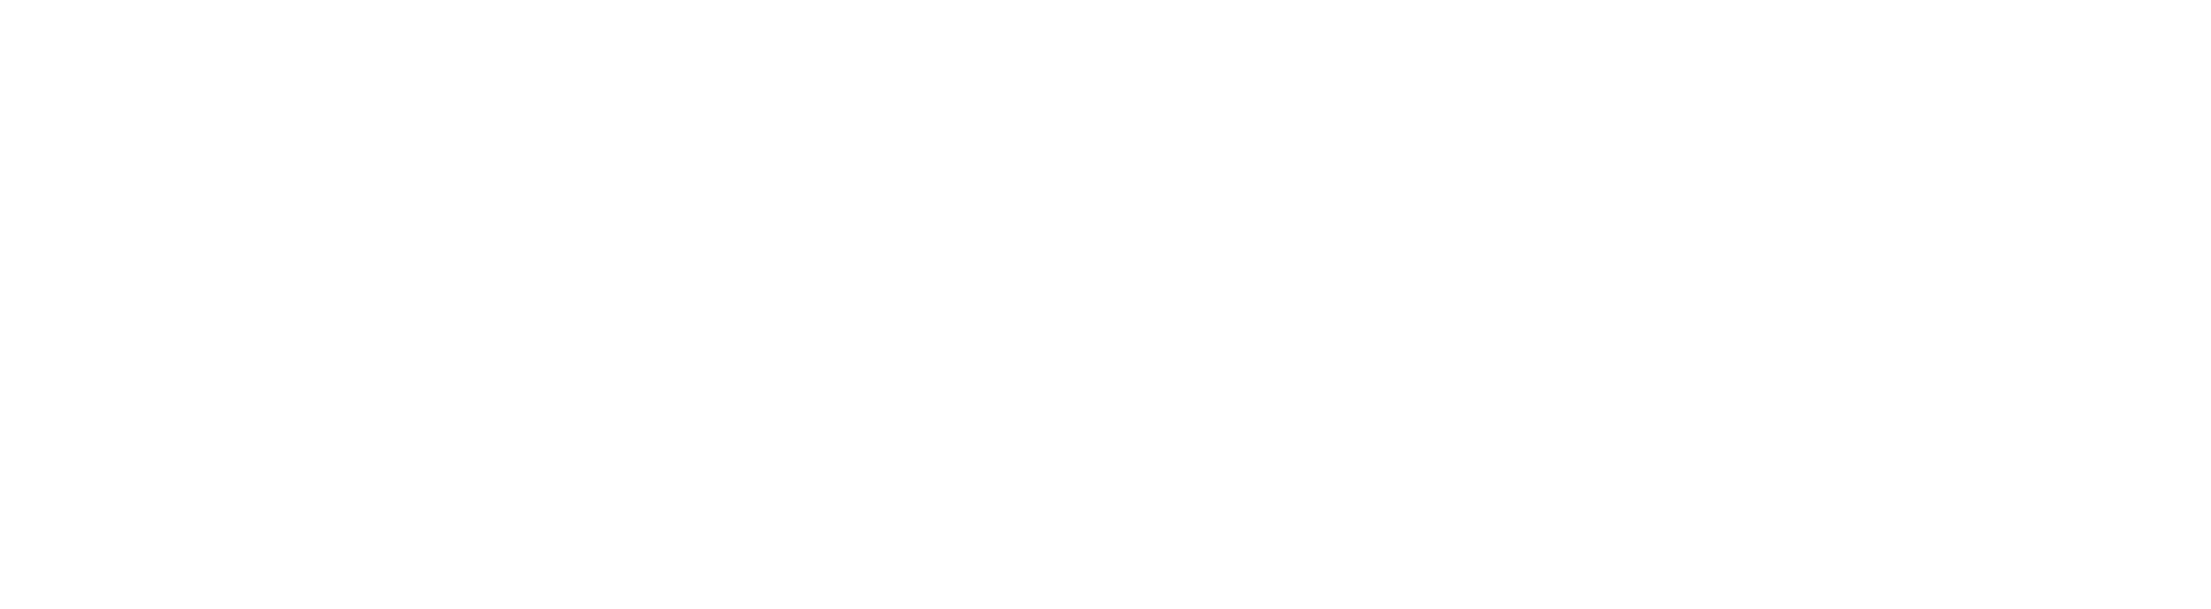 RadioKing Blog